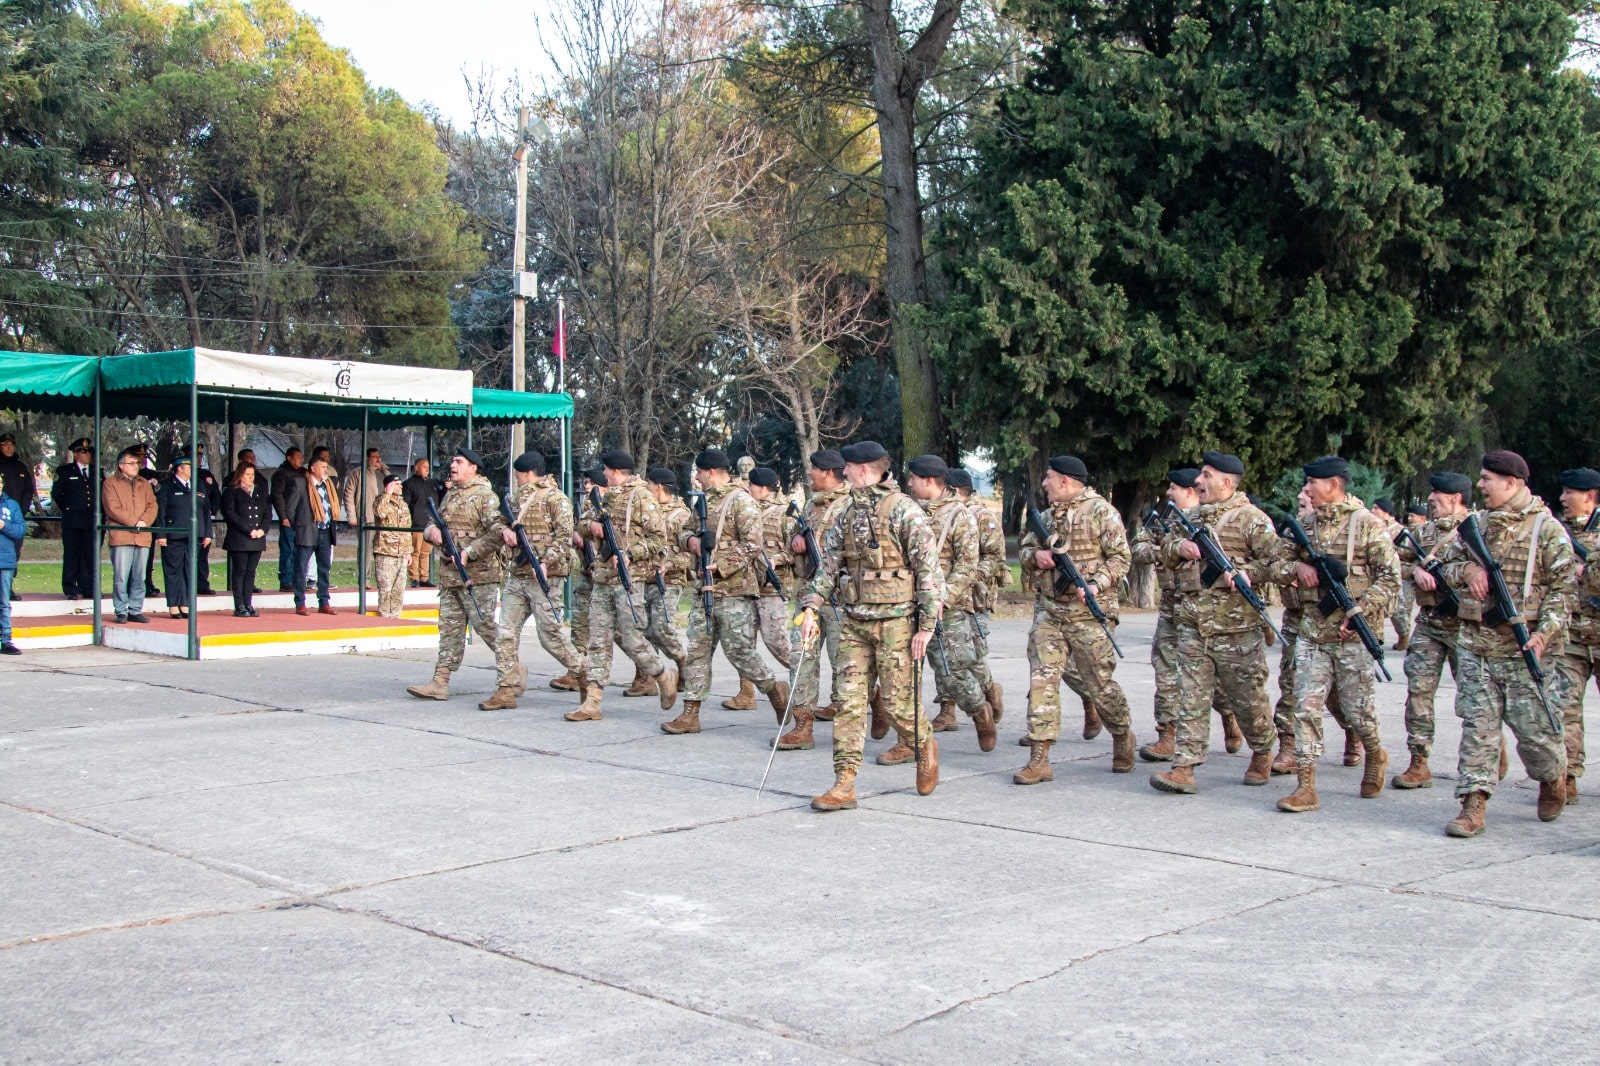 Aniversario del Ejército Argentino: Honrando su Legado y Compromiso con la Defensa Nacional